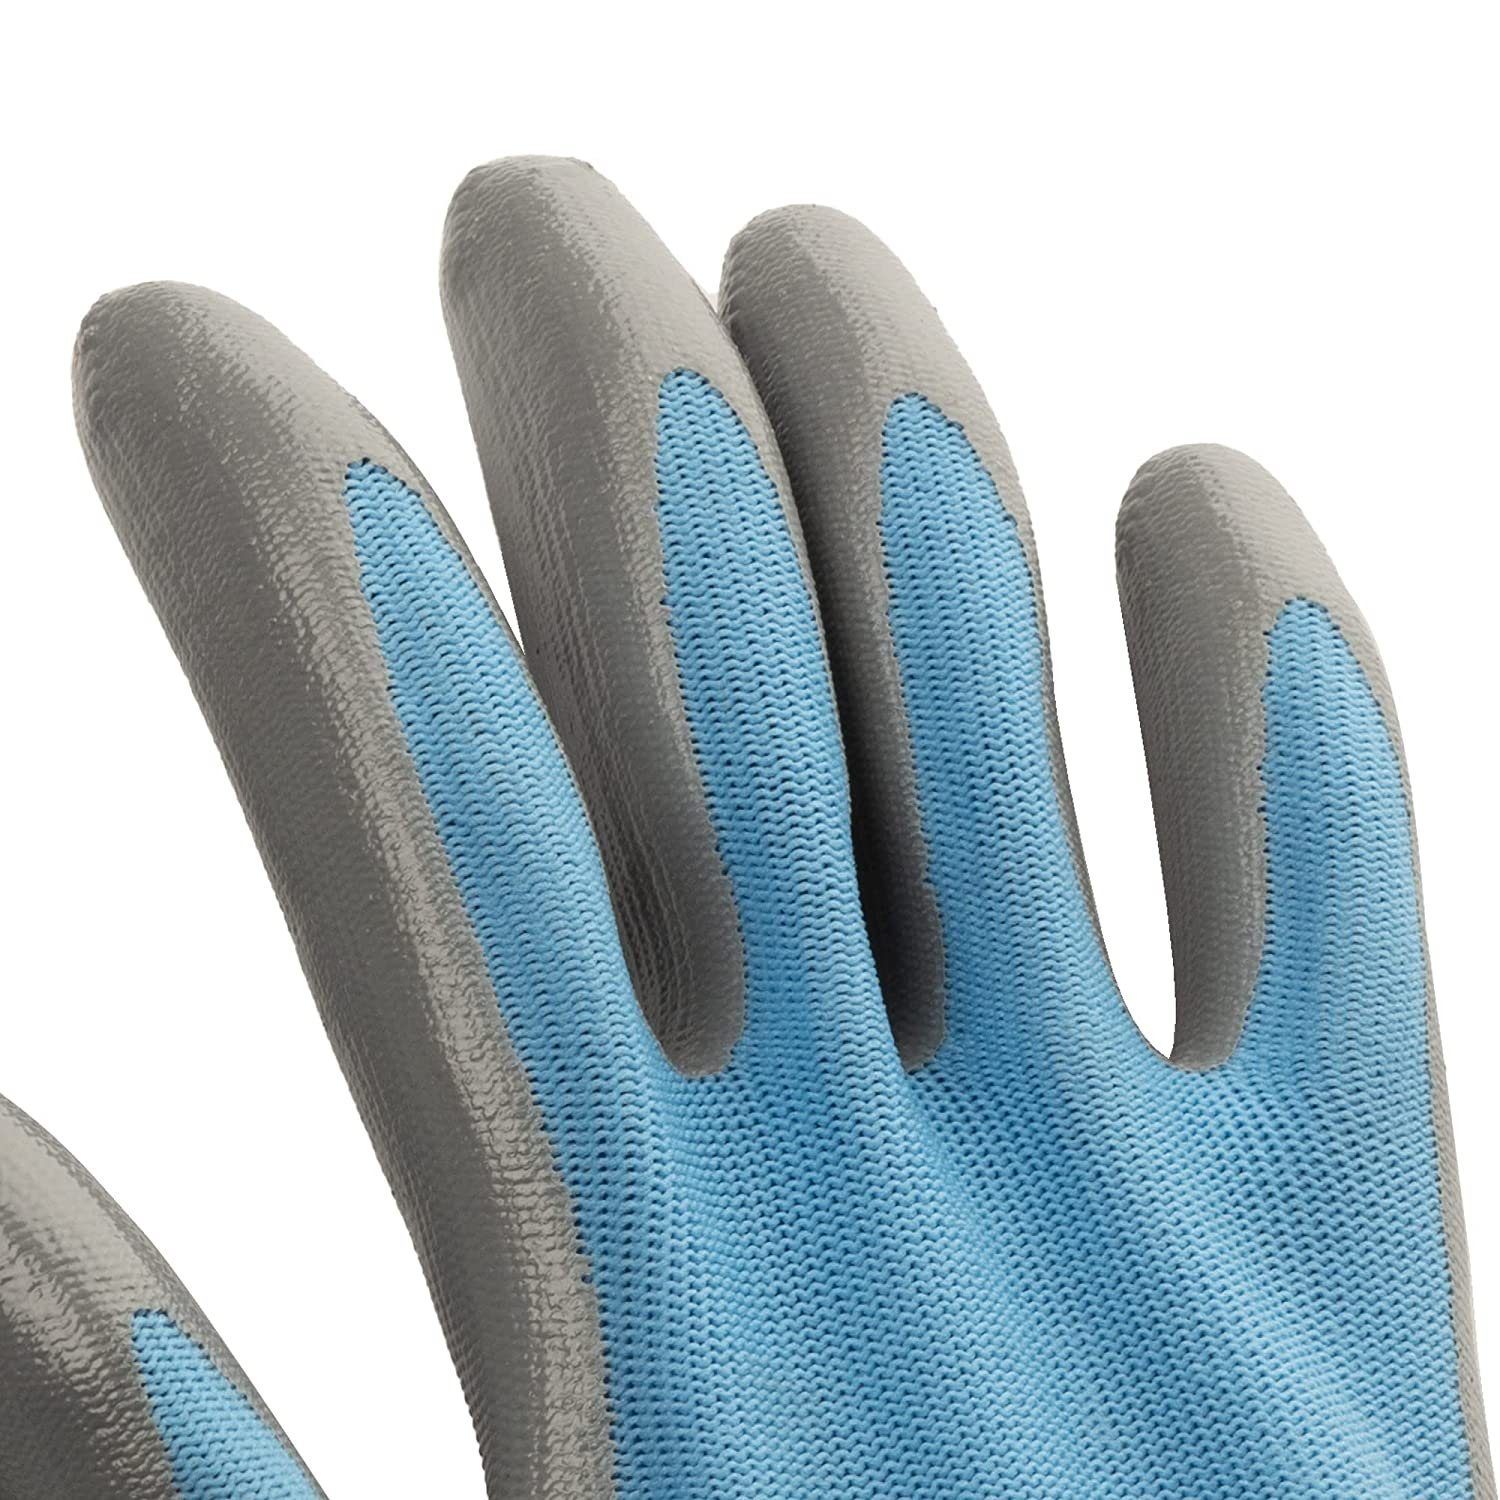 Centi Gartenhandschuhe Handschuhe Schutzhandschuhe Damen/Herren, Gartenhandschuhe 6 Arbeitshandschuhe Arbeitshandschuhe 10, Blau) Montagehandschuhe Größe (Set